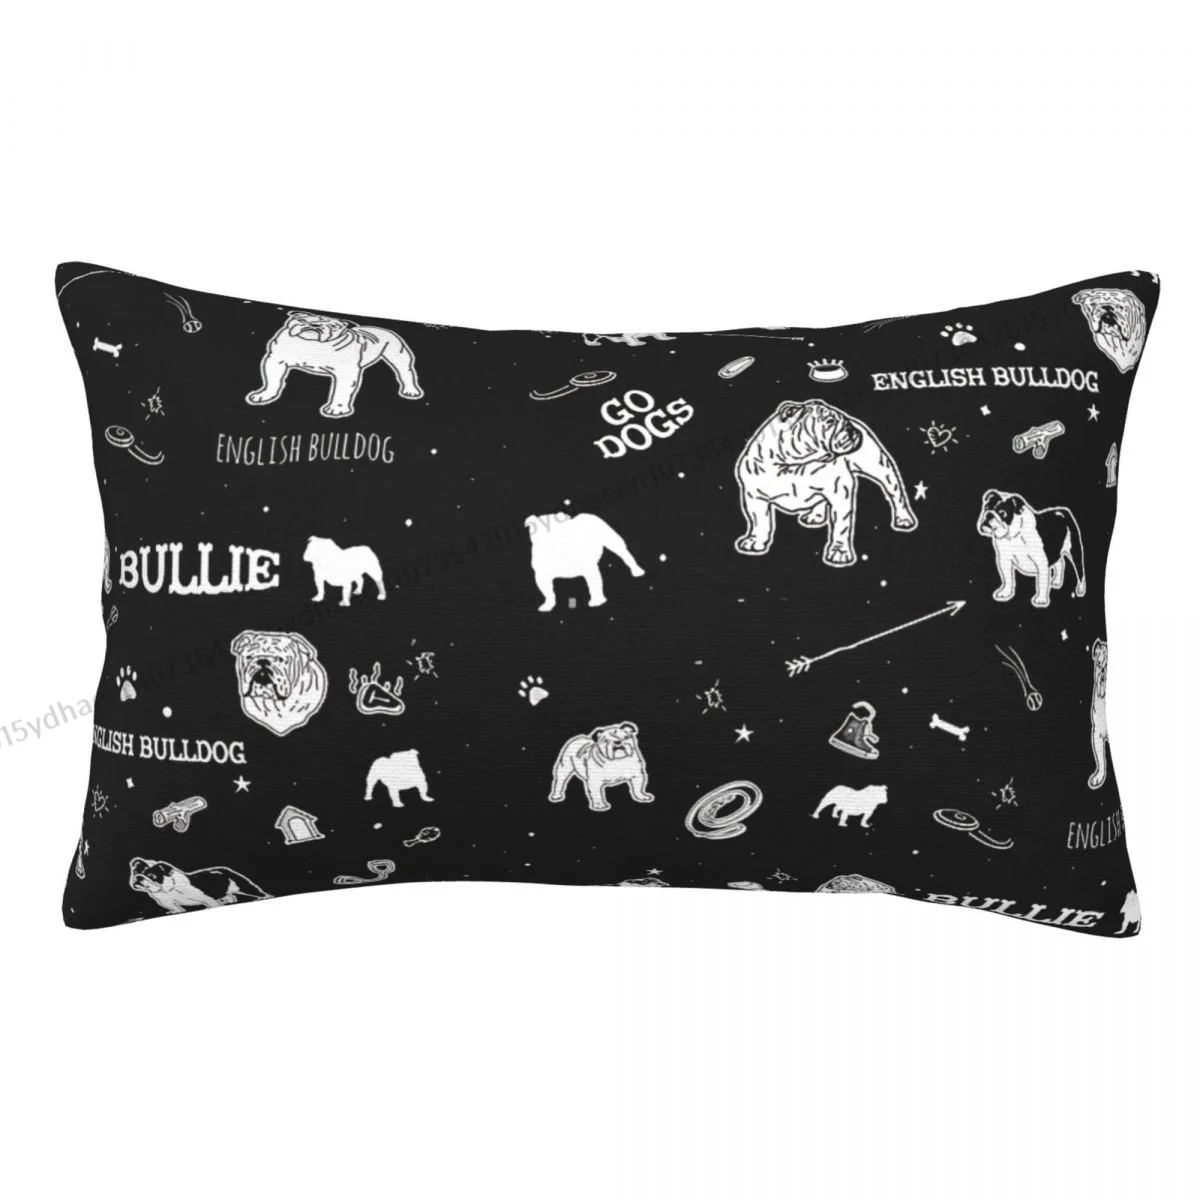 

English Bulldog Cojines Pillowcase Cushion Home Sofa Chair Print Decorative Coussin Pillow Covers